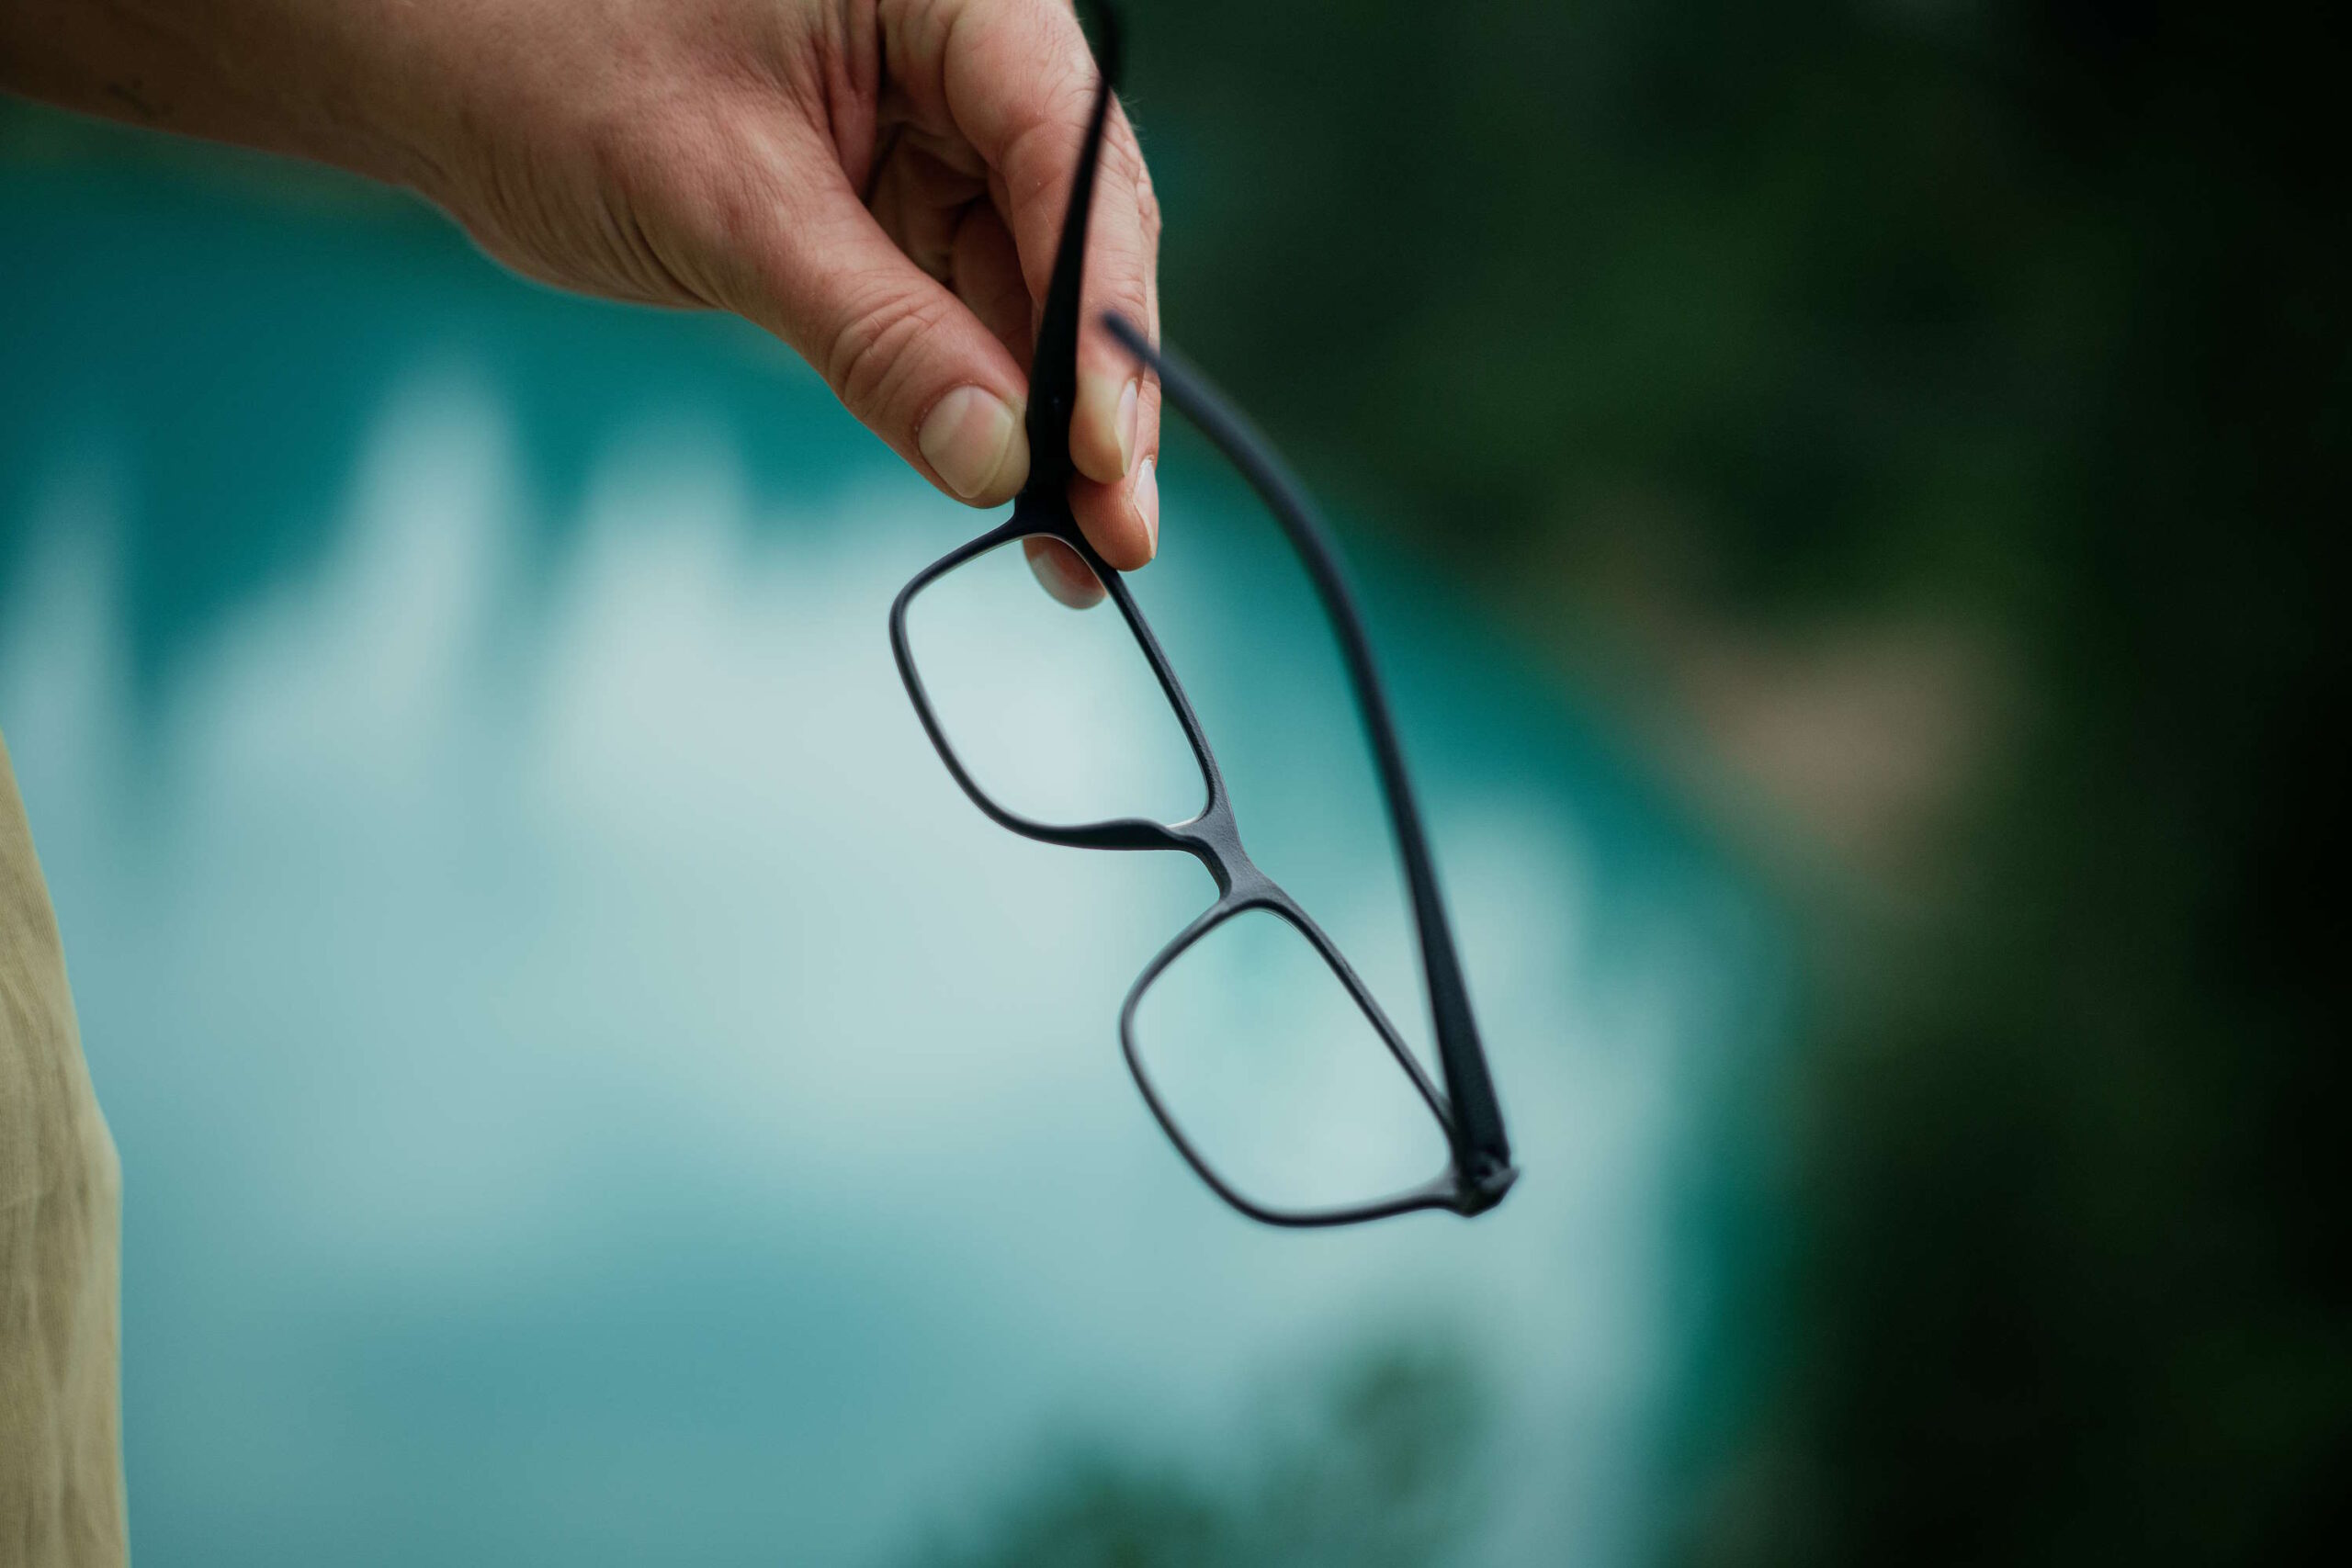 Nahaufnahme einer Hand, die eine schwarze Brille hält, als Lesehilfe über einem verschwommenen, blauen Hintergrund.